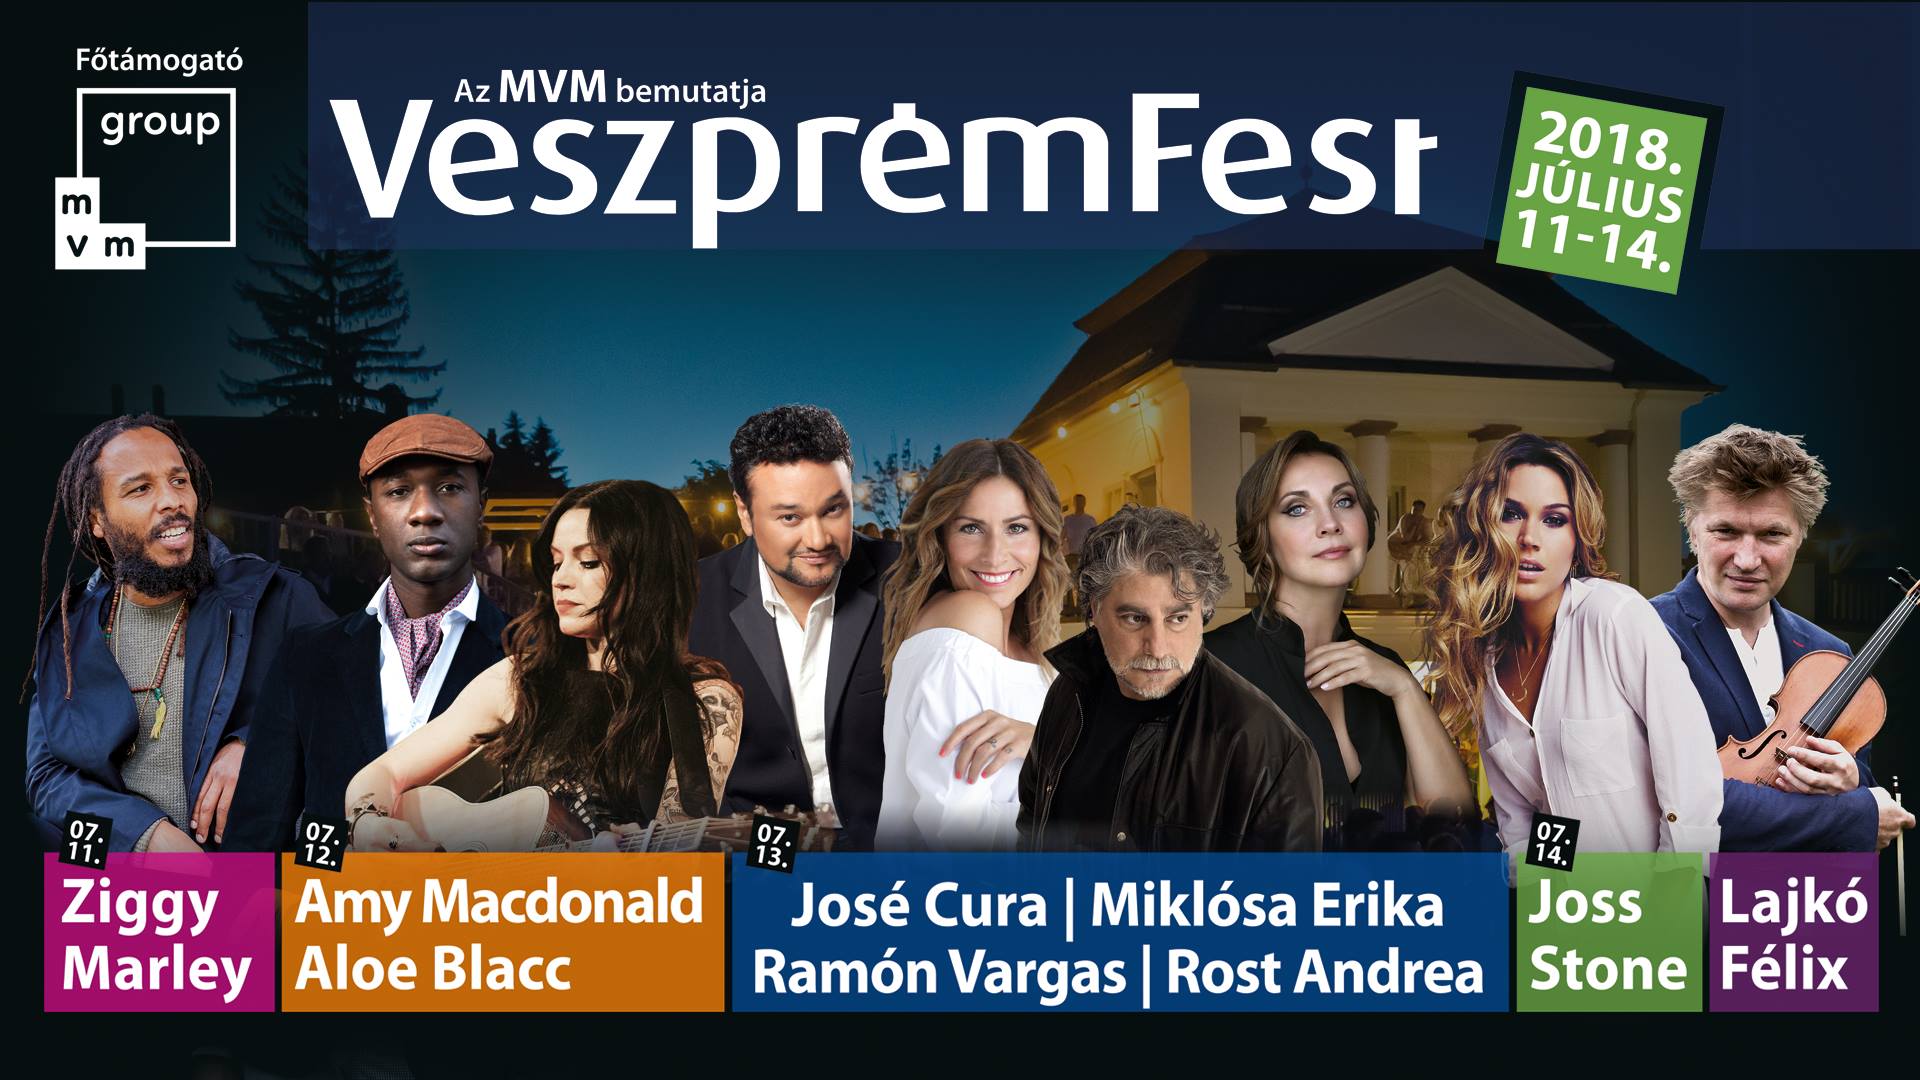 VeszprémFest 2018